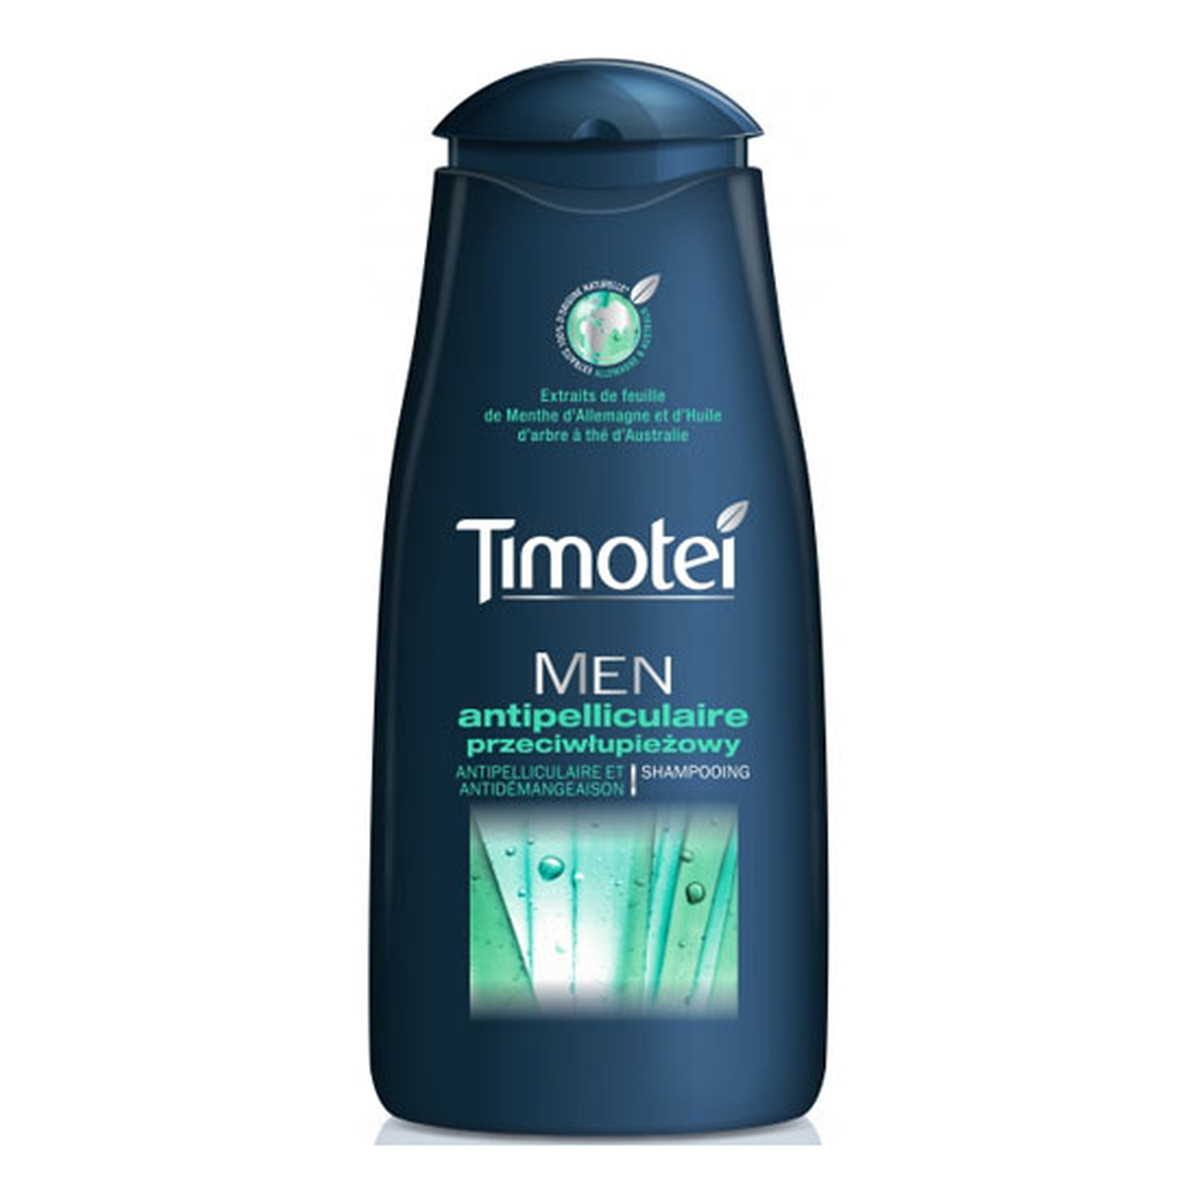 timotei szampon przeciwłupieżowy